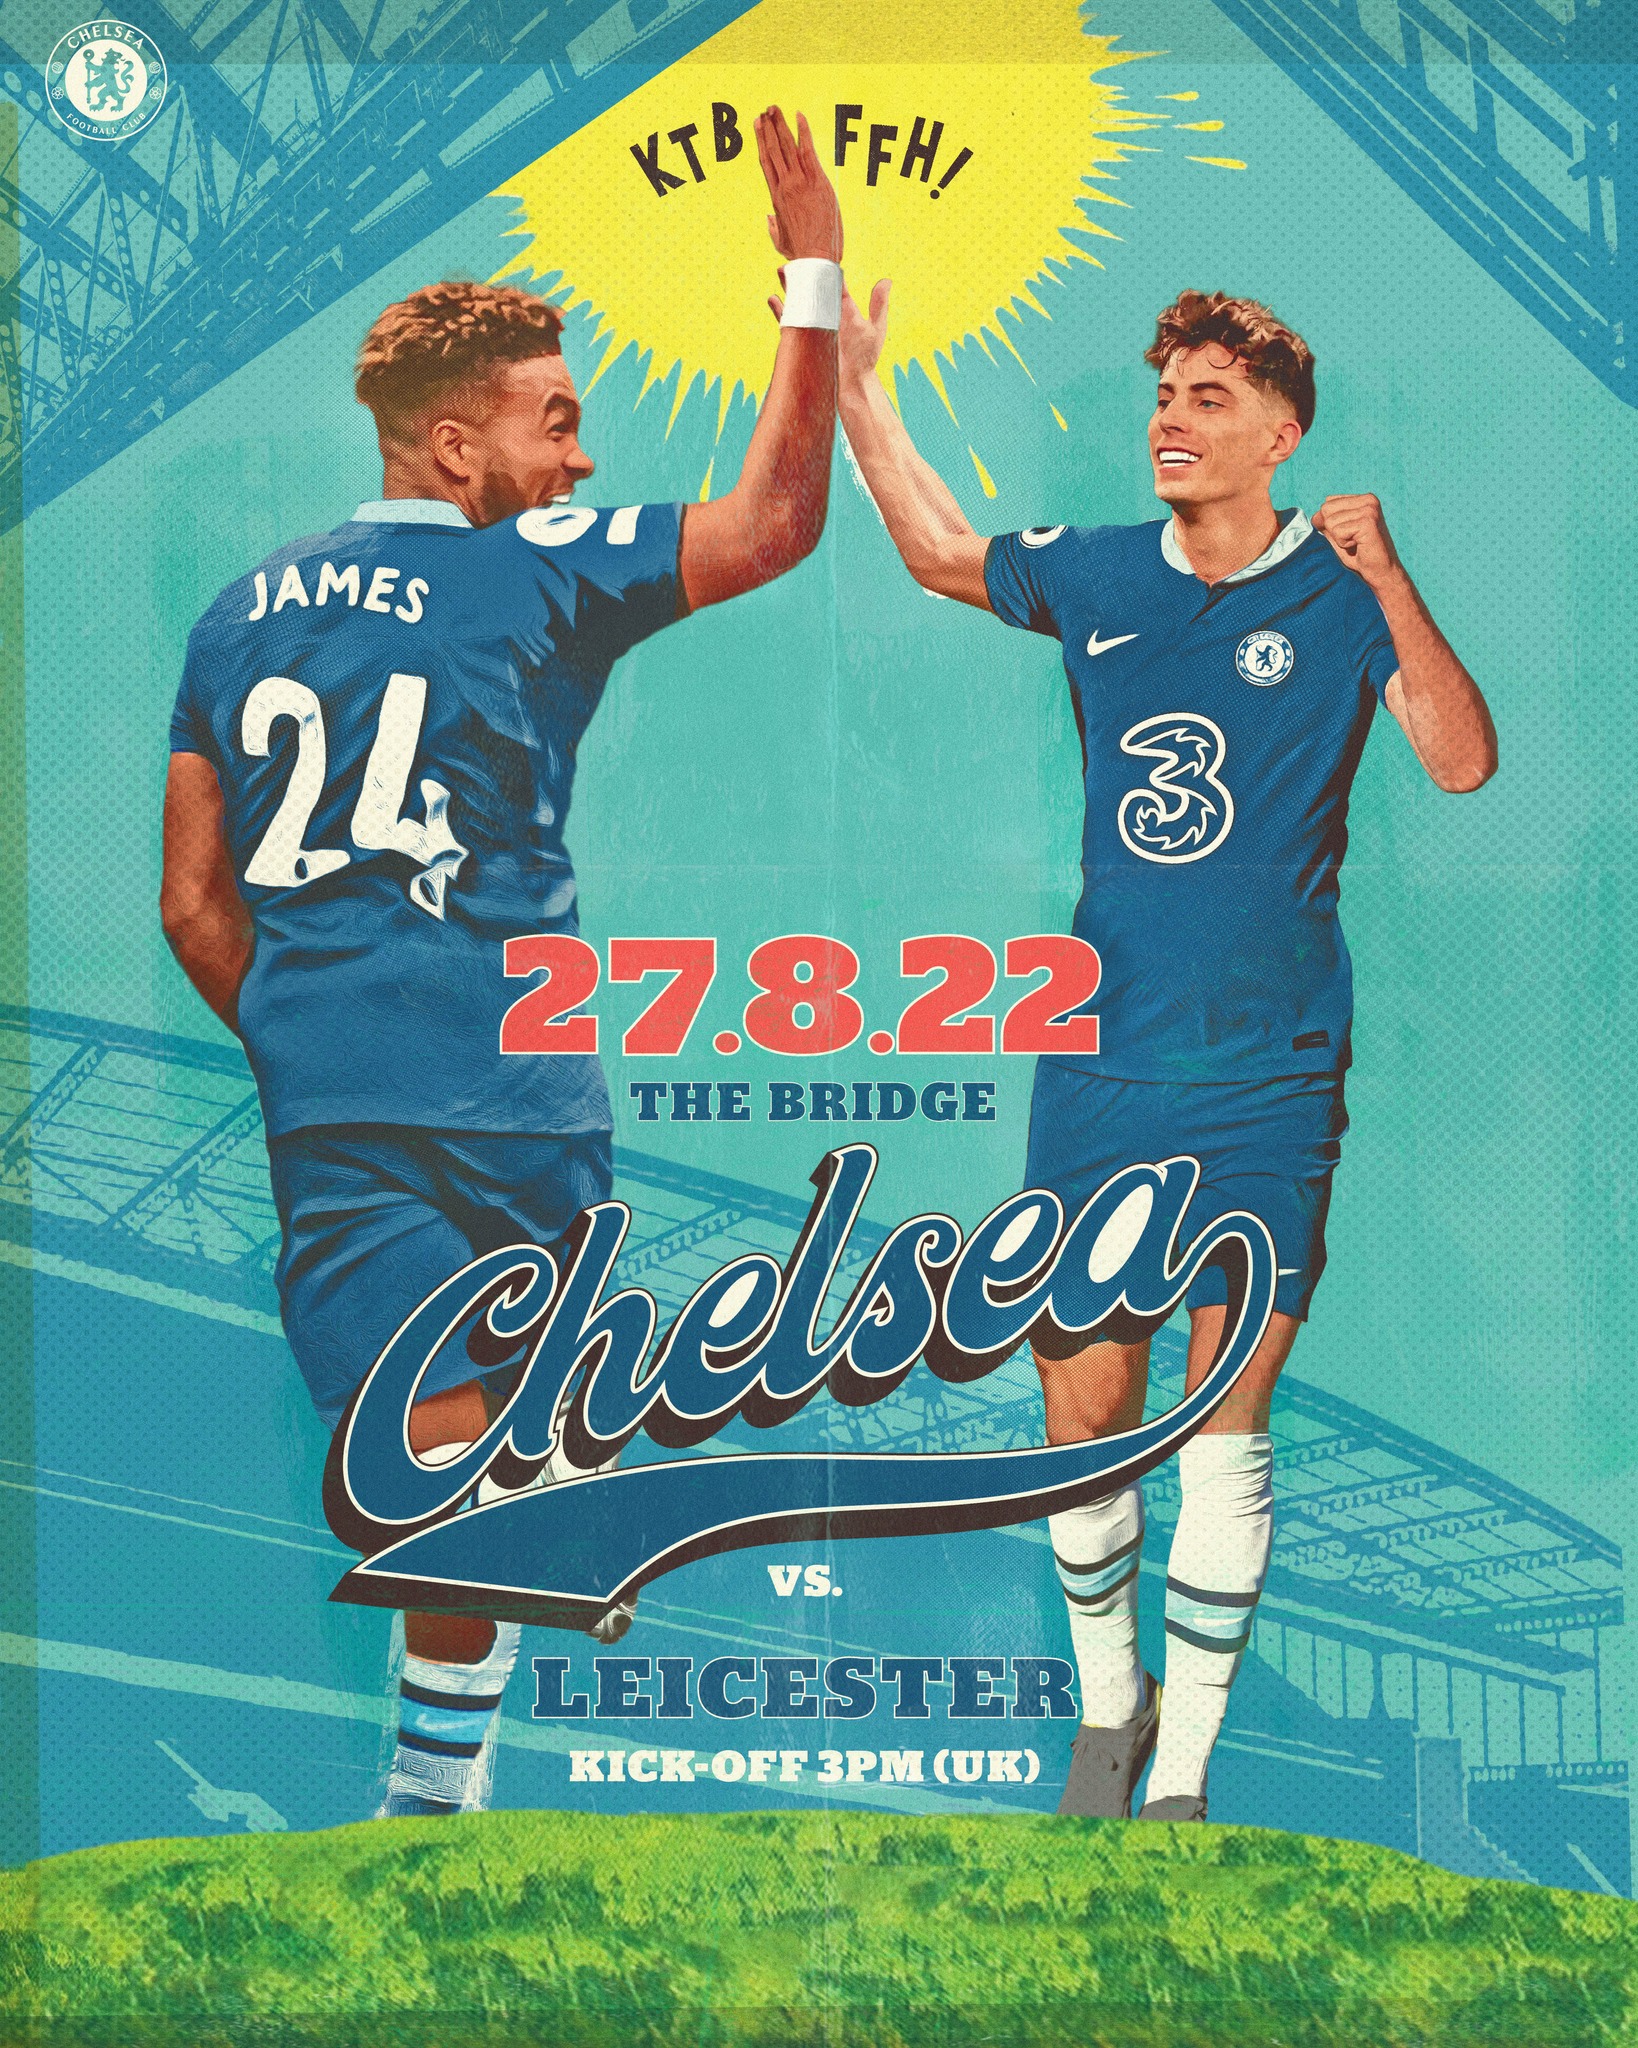 Trực tiếp Chelsea vs Leicester, link xem trực tiếp Chelsea vs Leicester: 18h00 27/08/2022